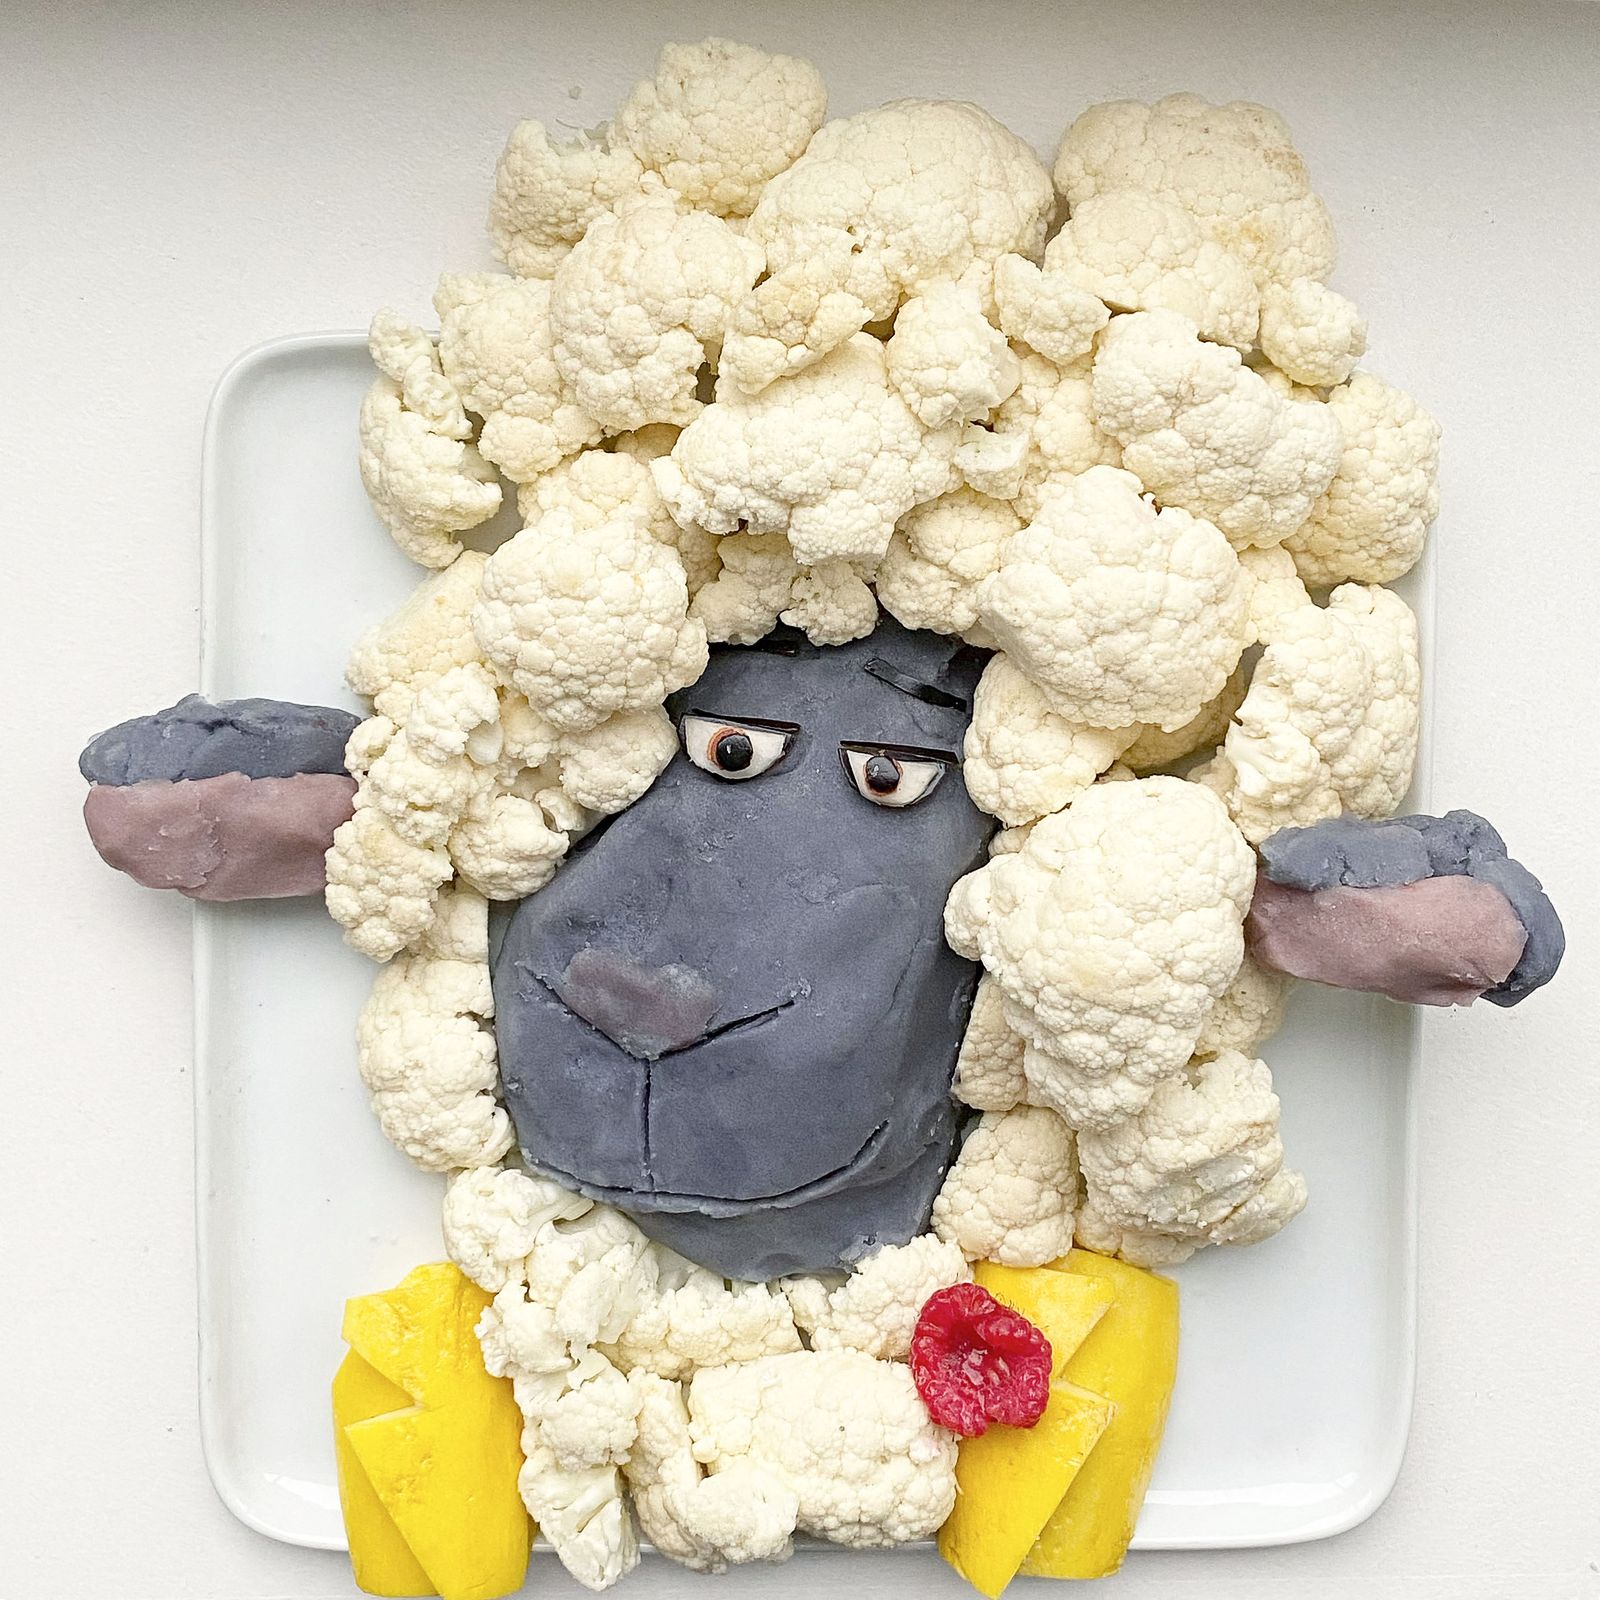 Портрет барашка Эдди из мультфильма «Зверопой», сделанный художником Харли Лэнгбергом